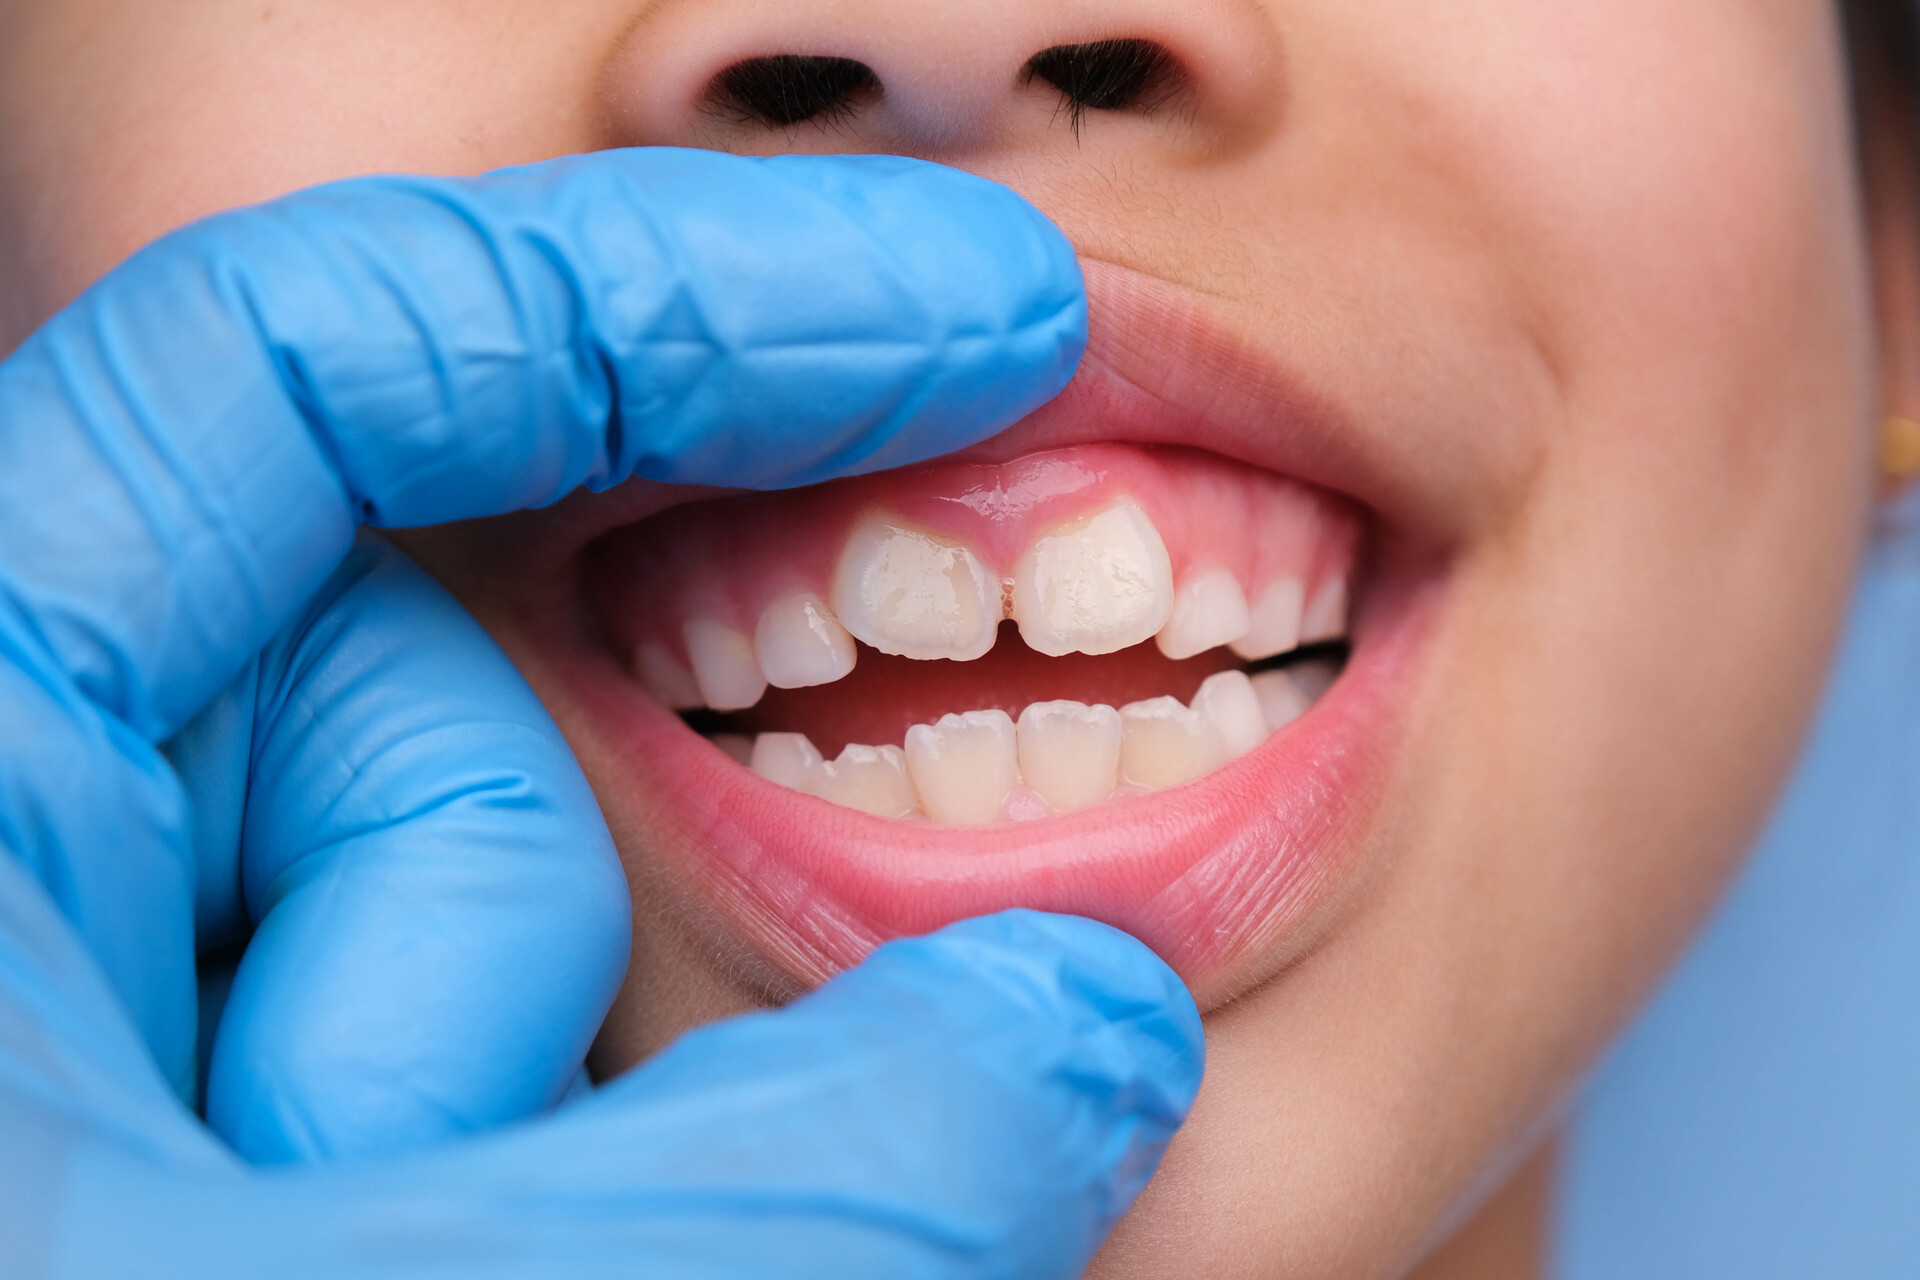 Obrazek przedstawia uśmiechnięte dziecko z białymi plamkami na zębach, które wymagają uwagi i troski. Plamki te mogą być wynikiem różnych czynników, takich jak nadmiar fluoru lub odwapnienie szkliwa. Pomimo tego, uśmiech dziecka jest wciąż uroczy i pełen radości, a z odpowiednią opieką i leczeniem można przywrócić mu zdrowe i piękne zęby